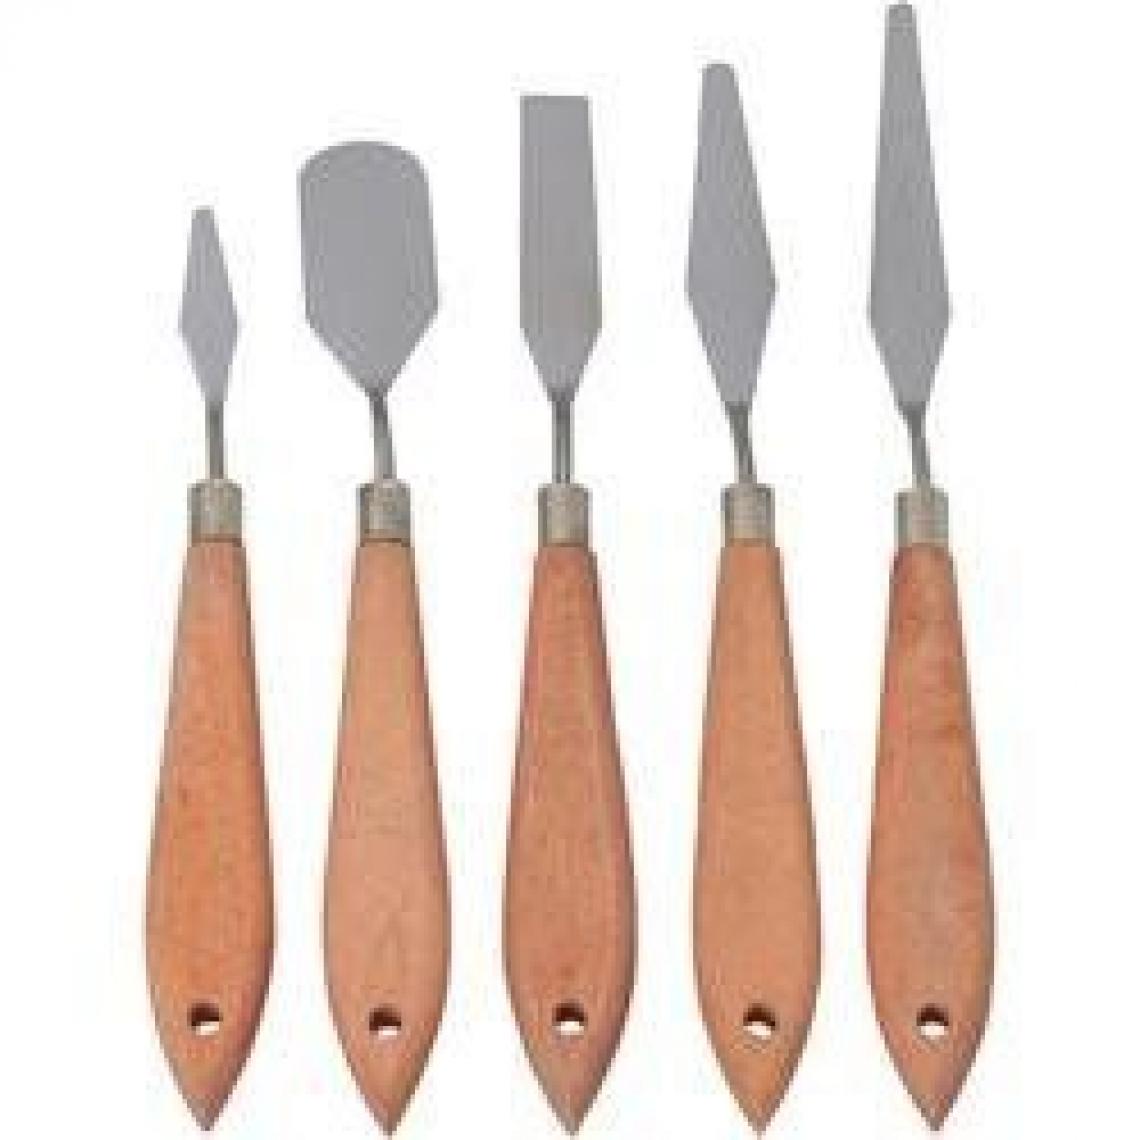 Inconnu - Lot de spatules pour modélisme ferroviaire, 5 pièces - Accessoires et pièces